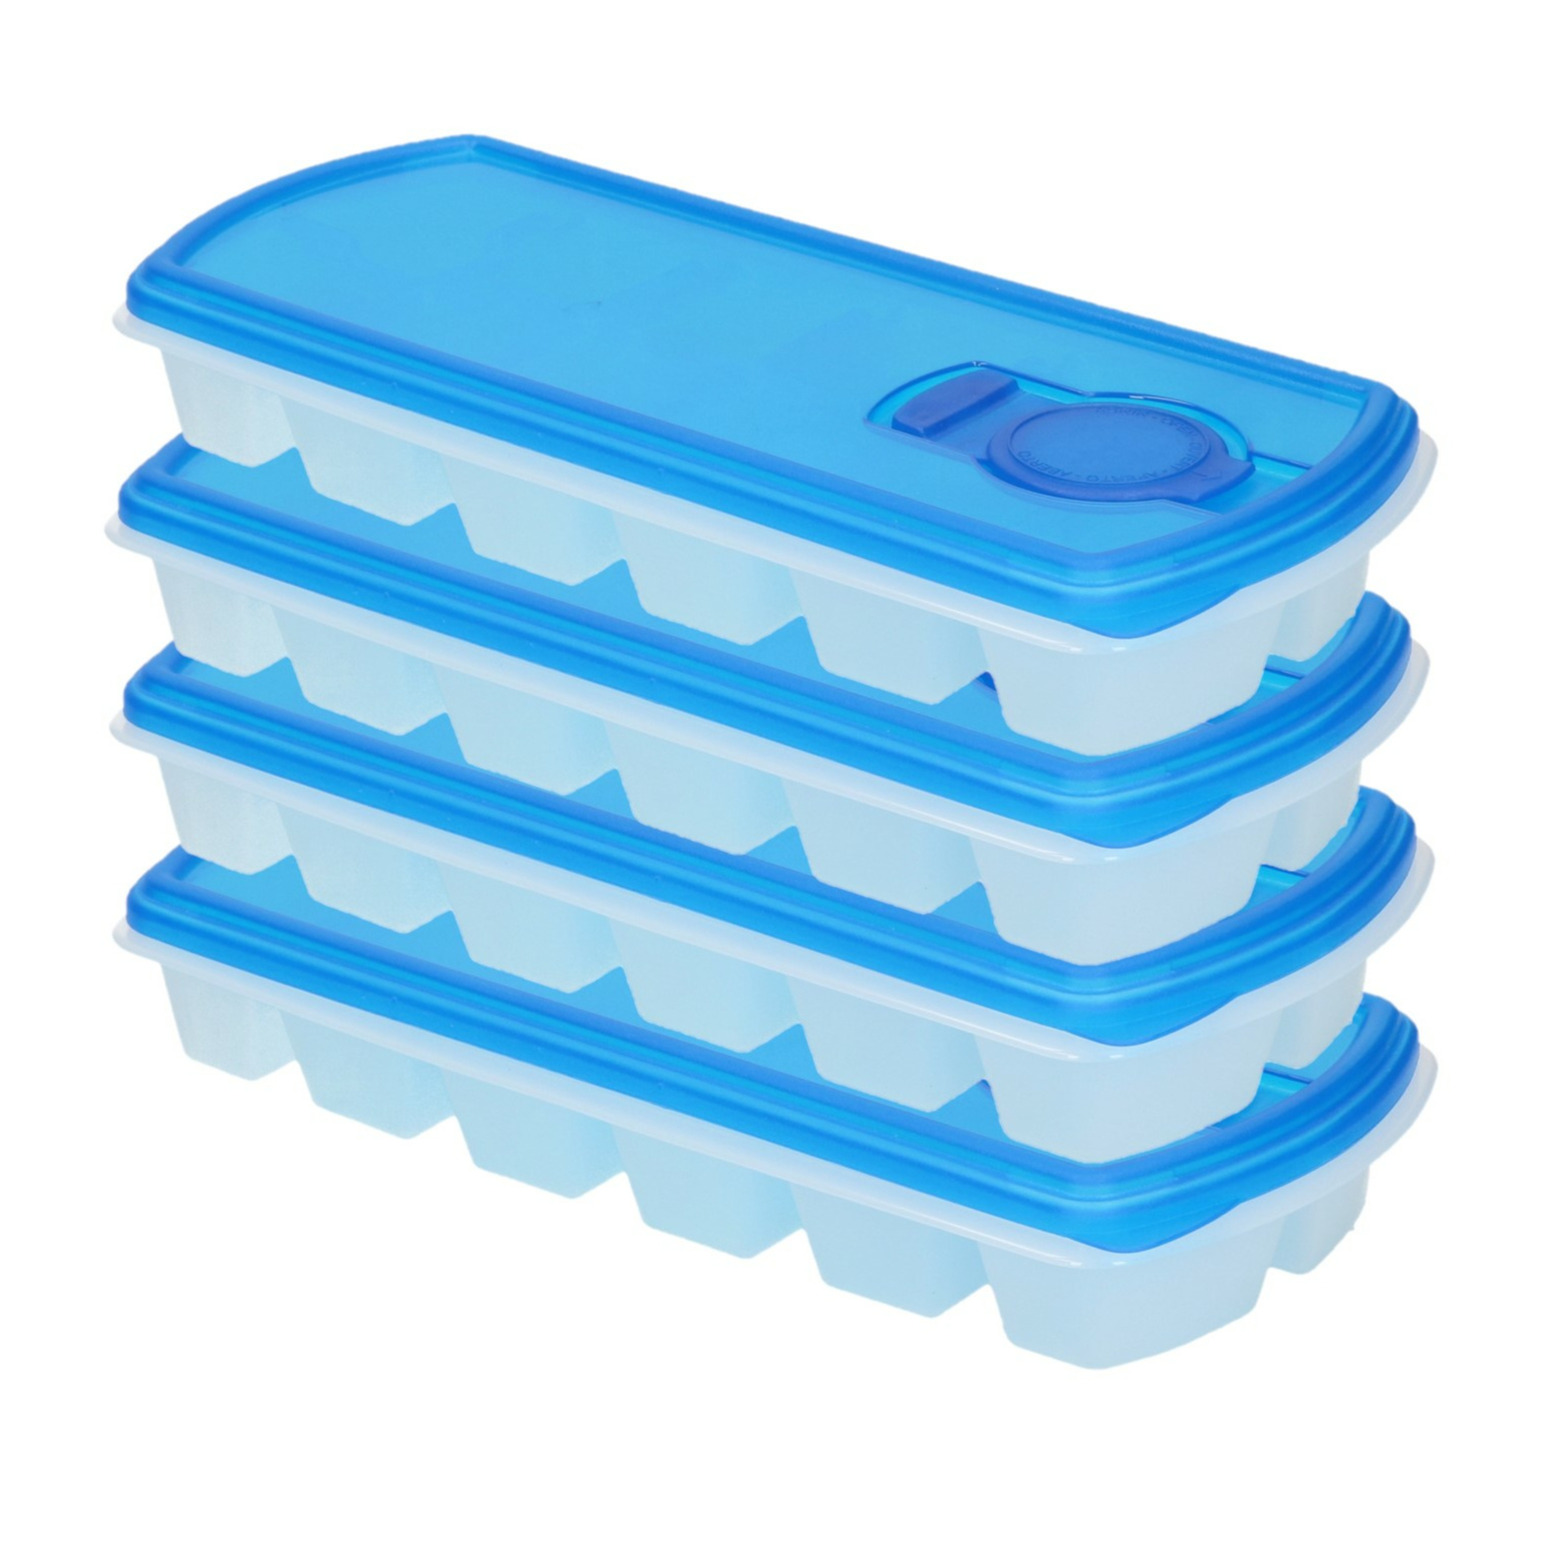 Voordeelset van 4x stuks iJsblokjes-ijsklontjes maken bakjes met afsluit deksel blauw 26 cm